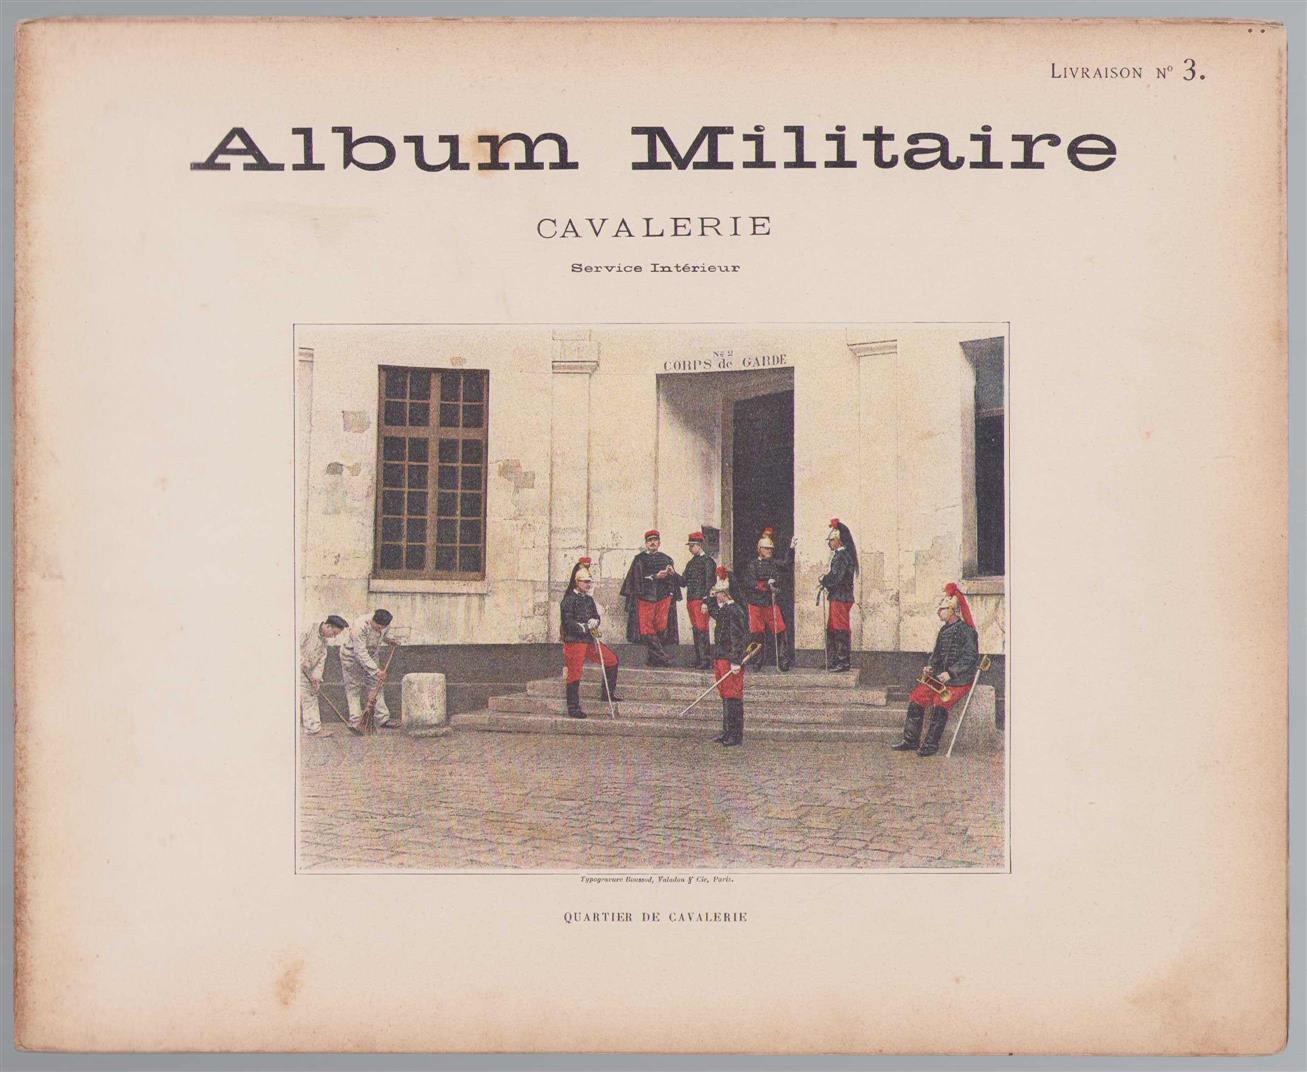 n.n - Album militaire de l'Armee francaise. Cavalerie service interieur